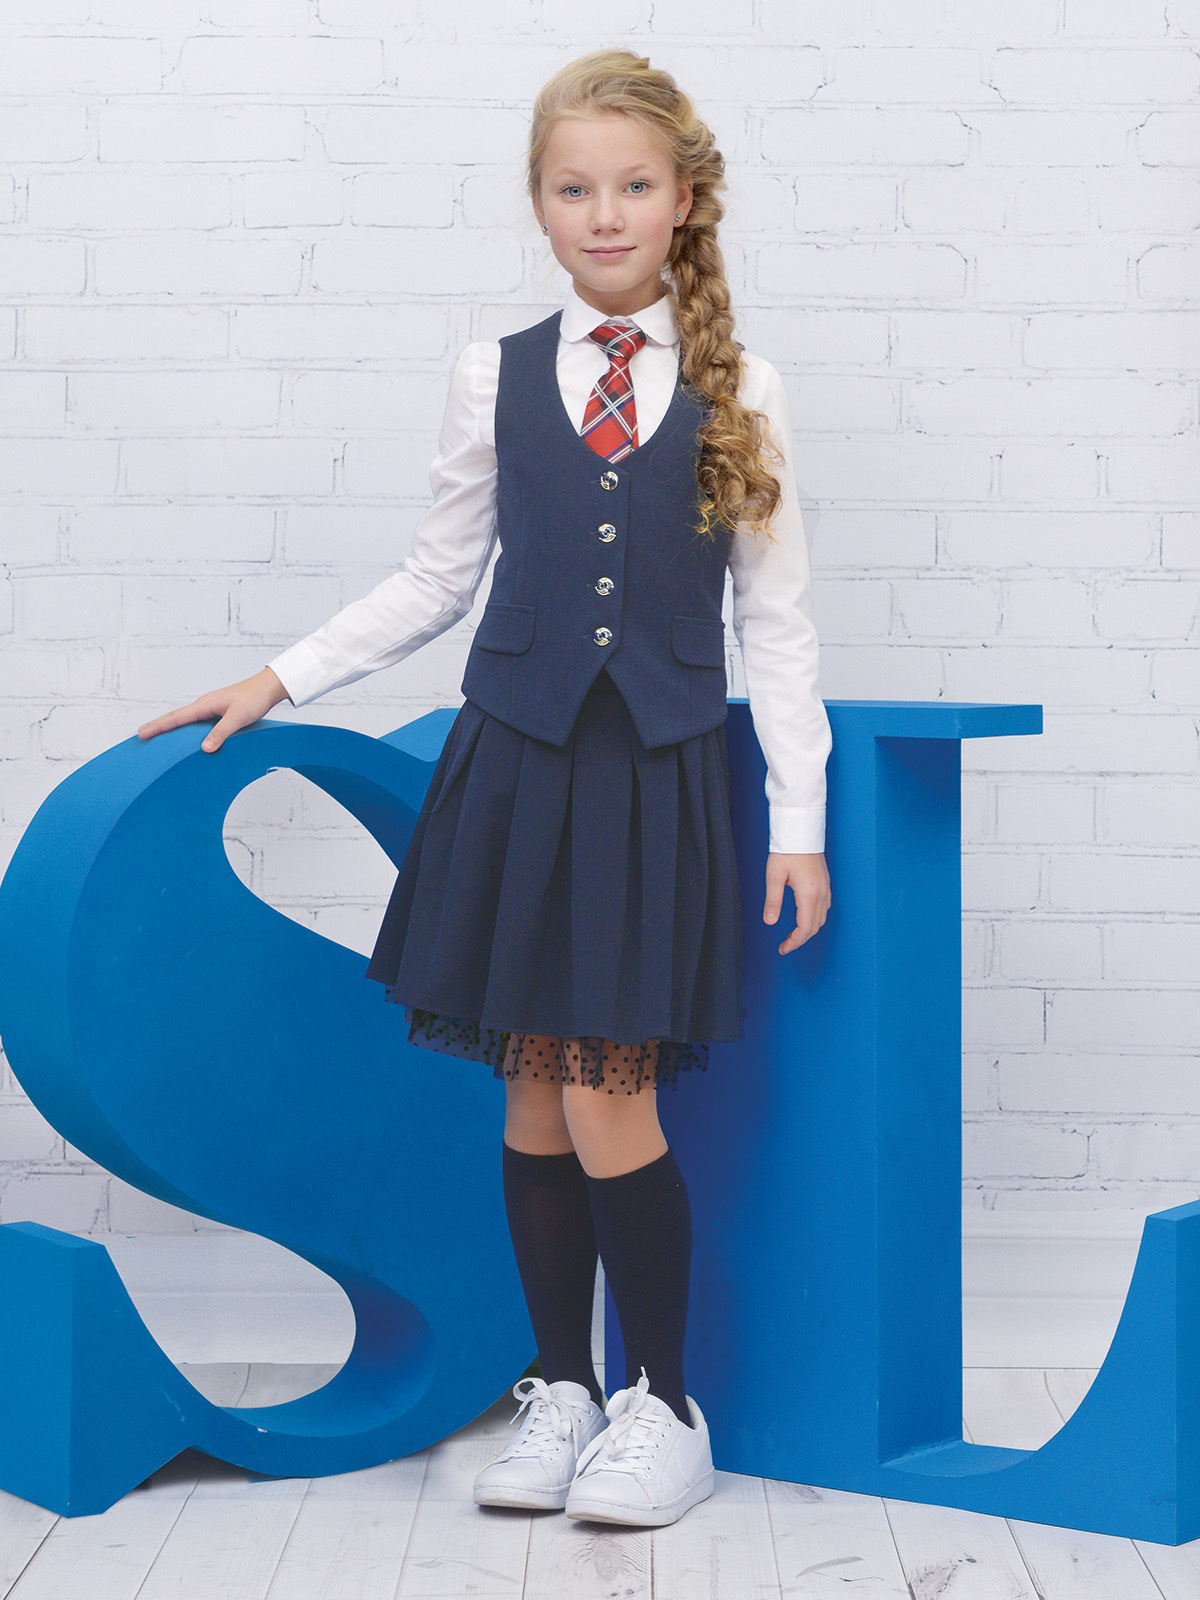 Школа форма купит. Школьная форма Skylake жилет Rio. Школьная форма Skylake жилет синий. Жилет Рио ШФ-1562 бордо. Школьная форма для девочек синяя.